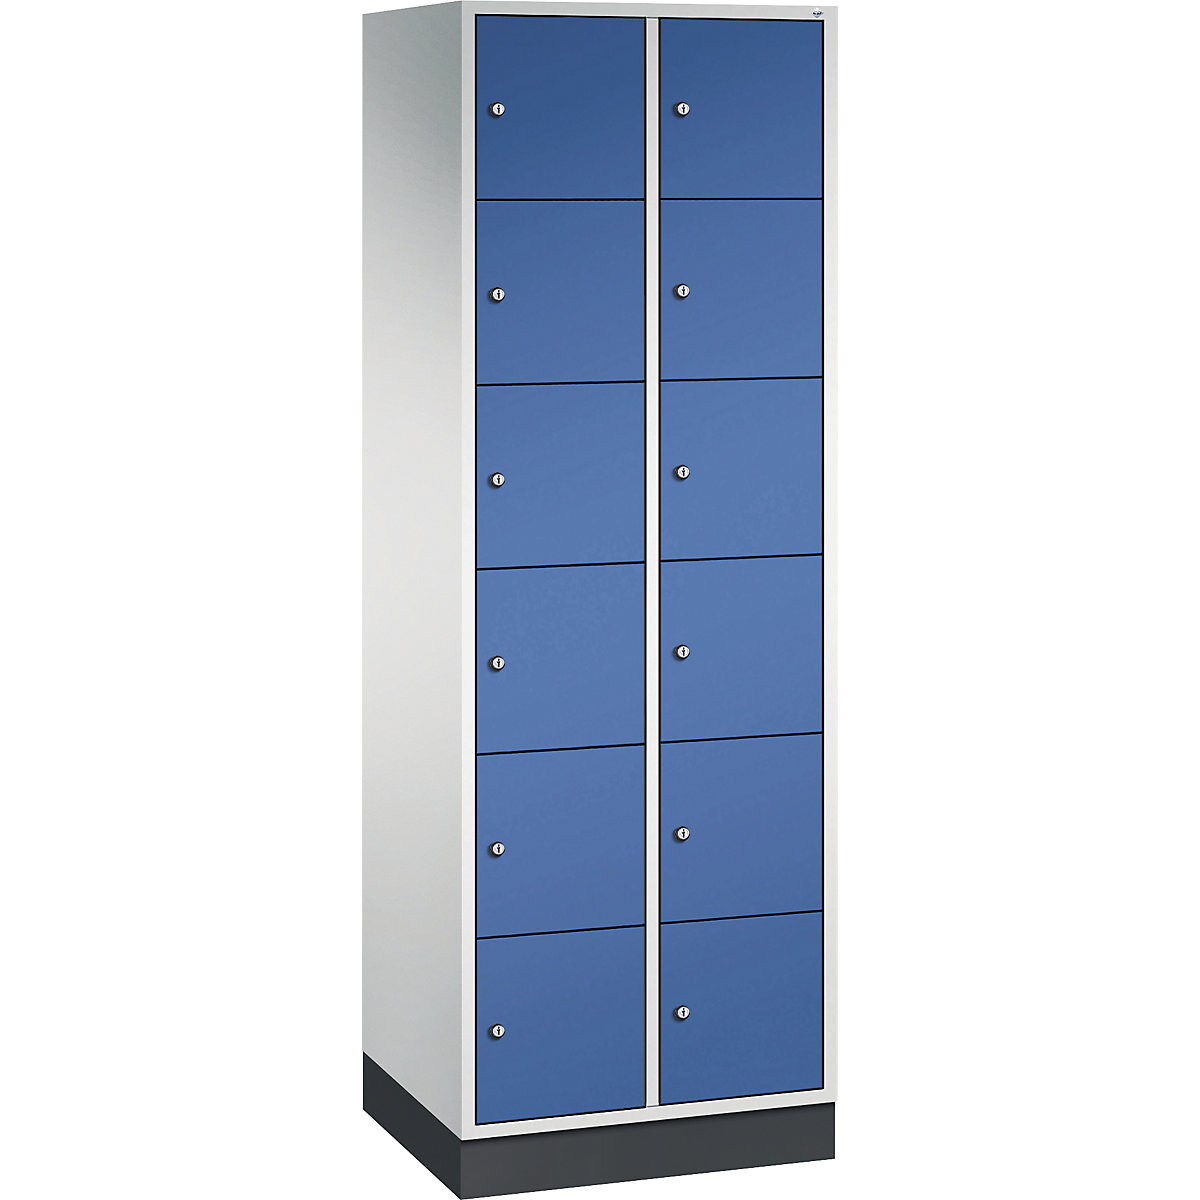 Vestiaire multicases en acier INTRO, casiers hauteur 285 mm – C+P, l x p 620 x 500 mm, 12 casiers, corps gris clair, portes bleu gentiane-11